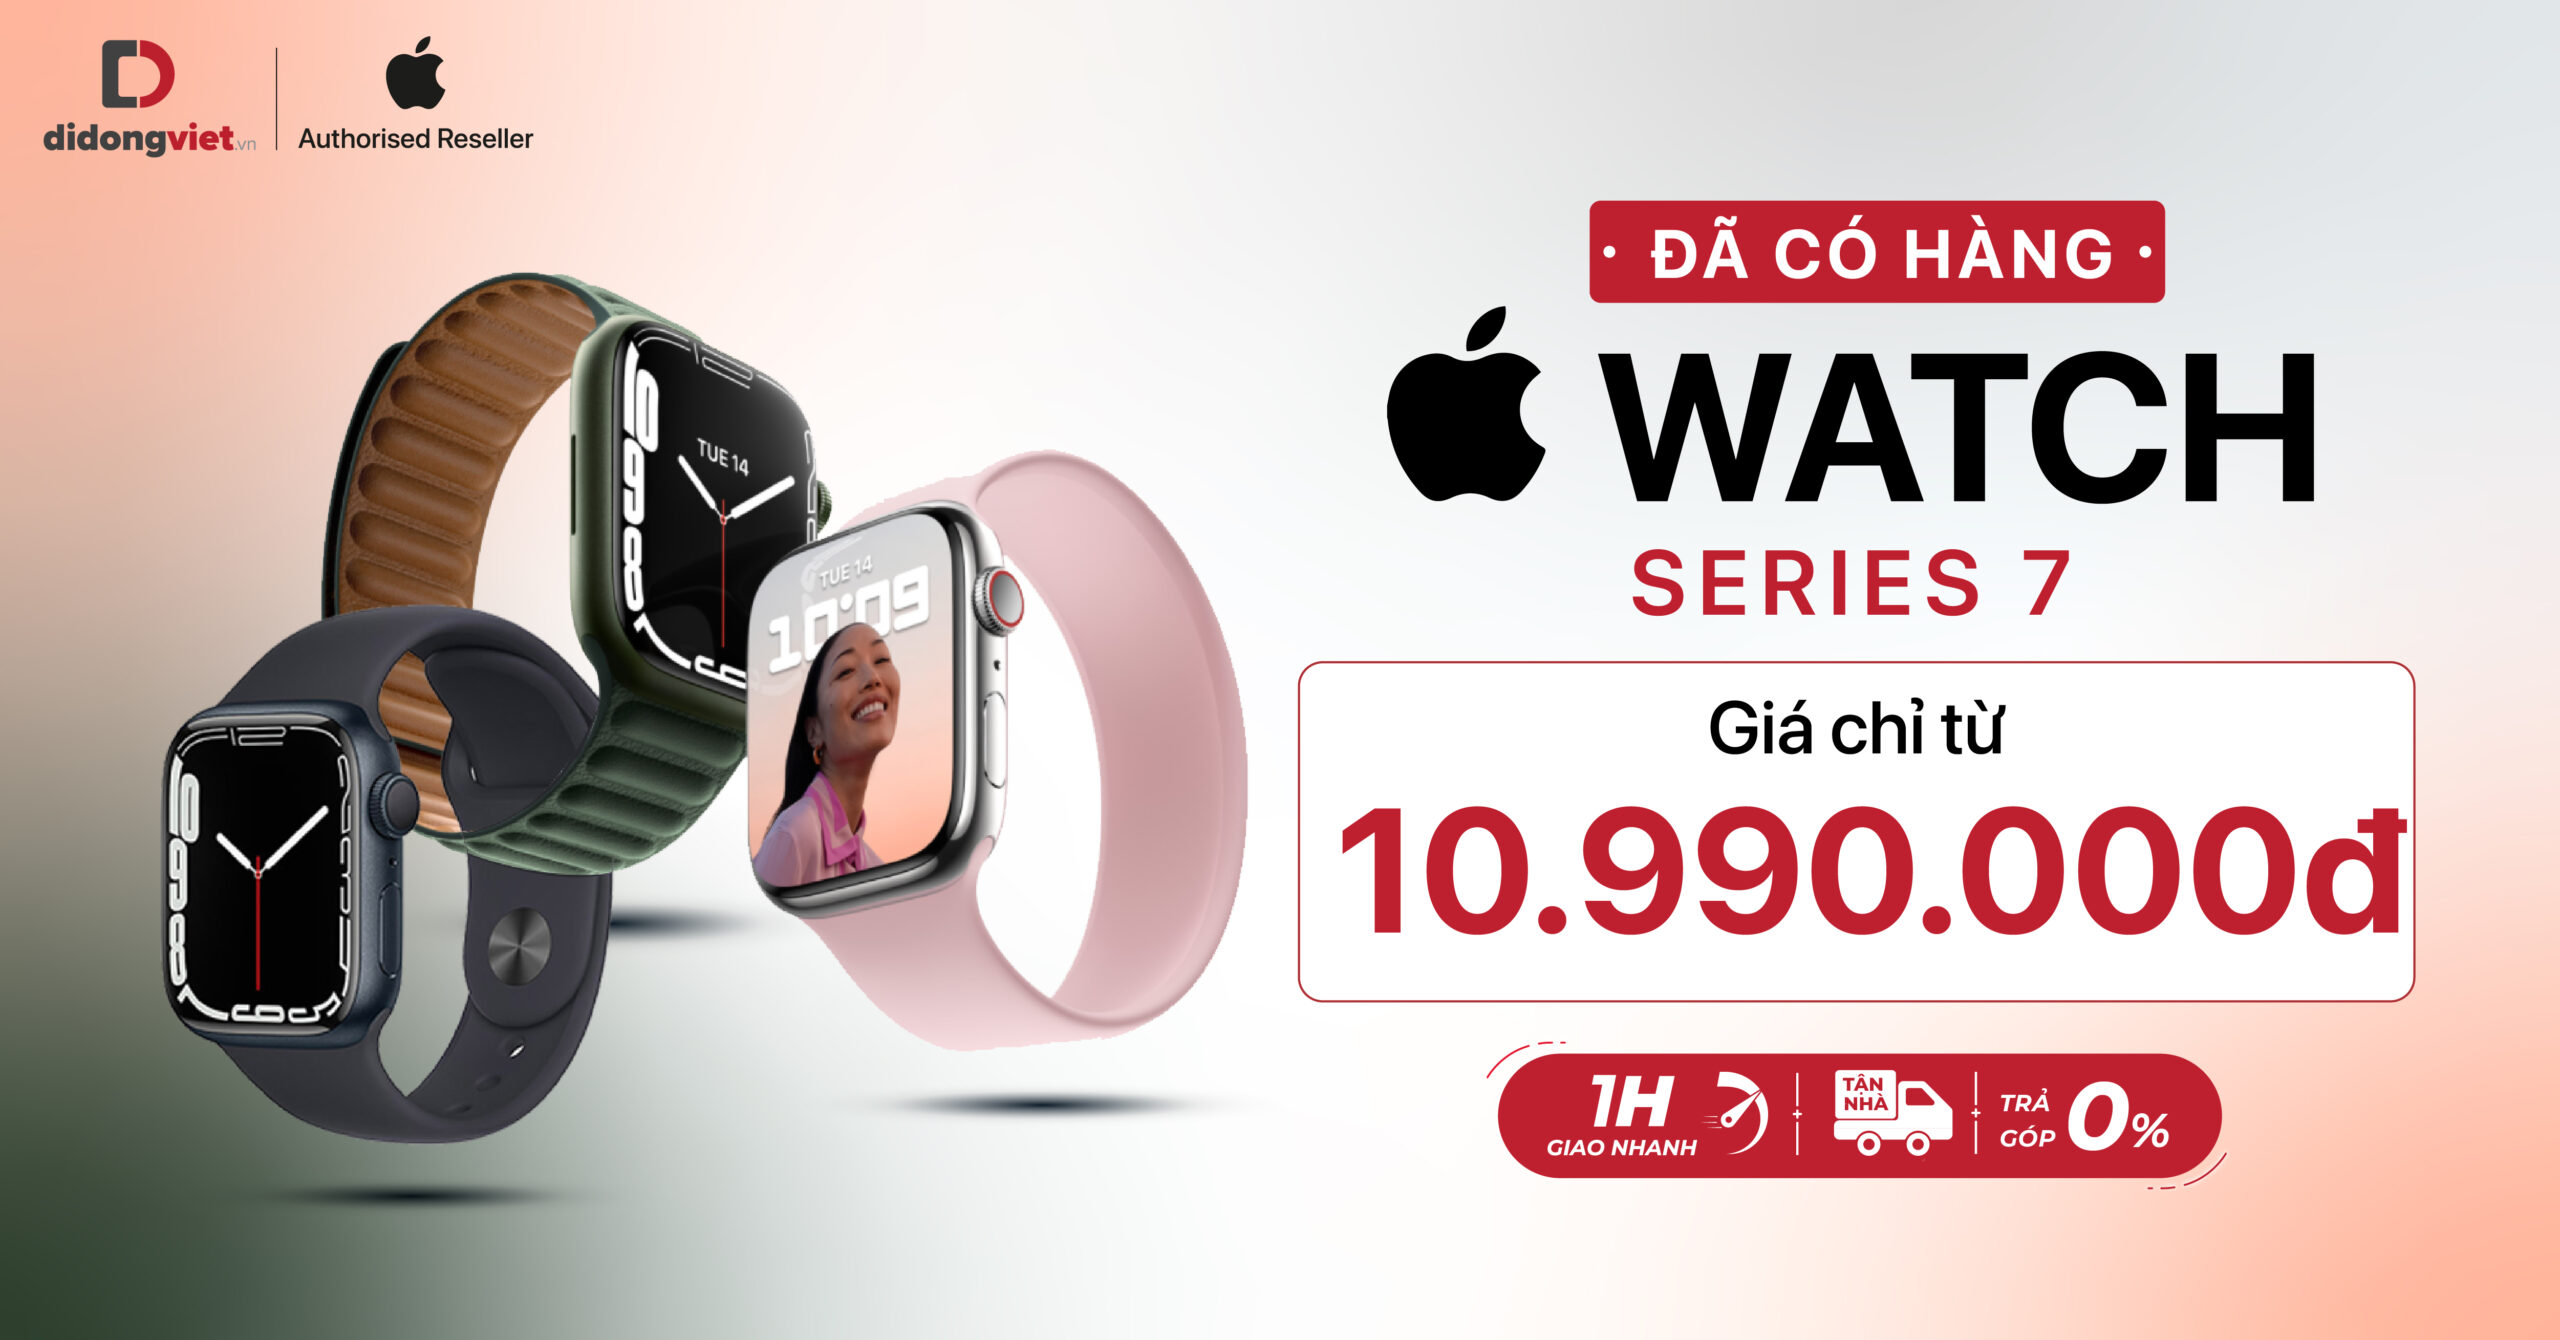 Apple Watch Series 7 đã có hàng: Giá hấp dẫn chỉ từ 10.990.000 đồng tại Di Động Việt